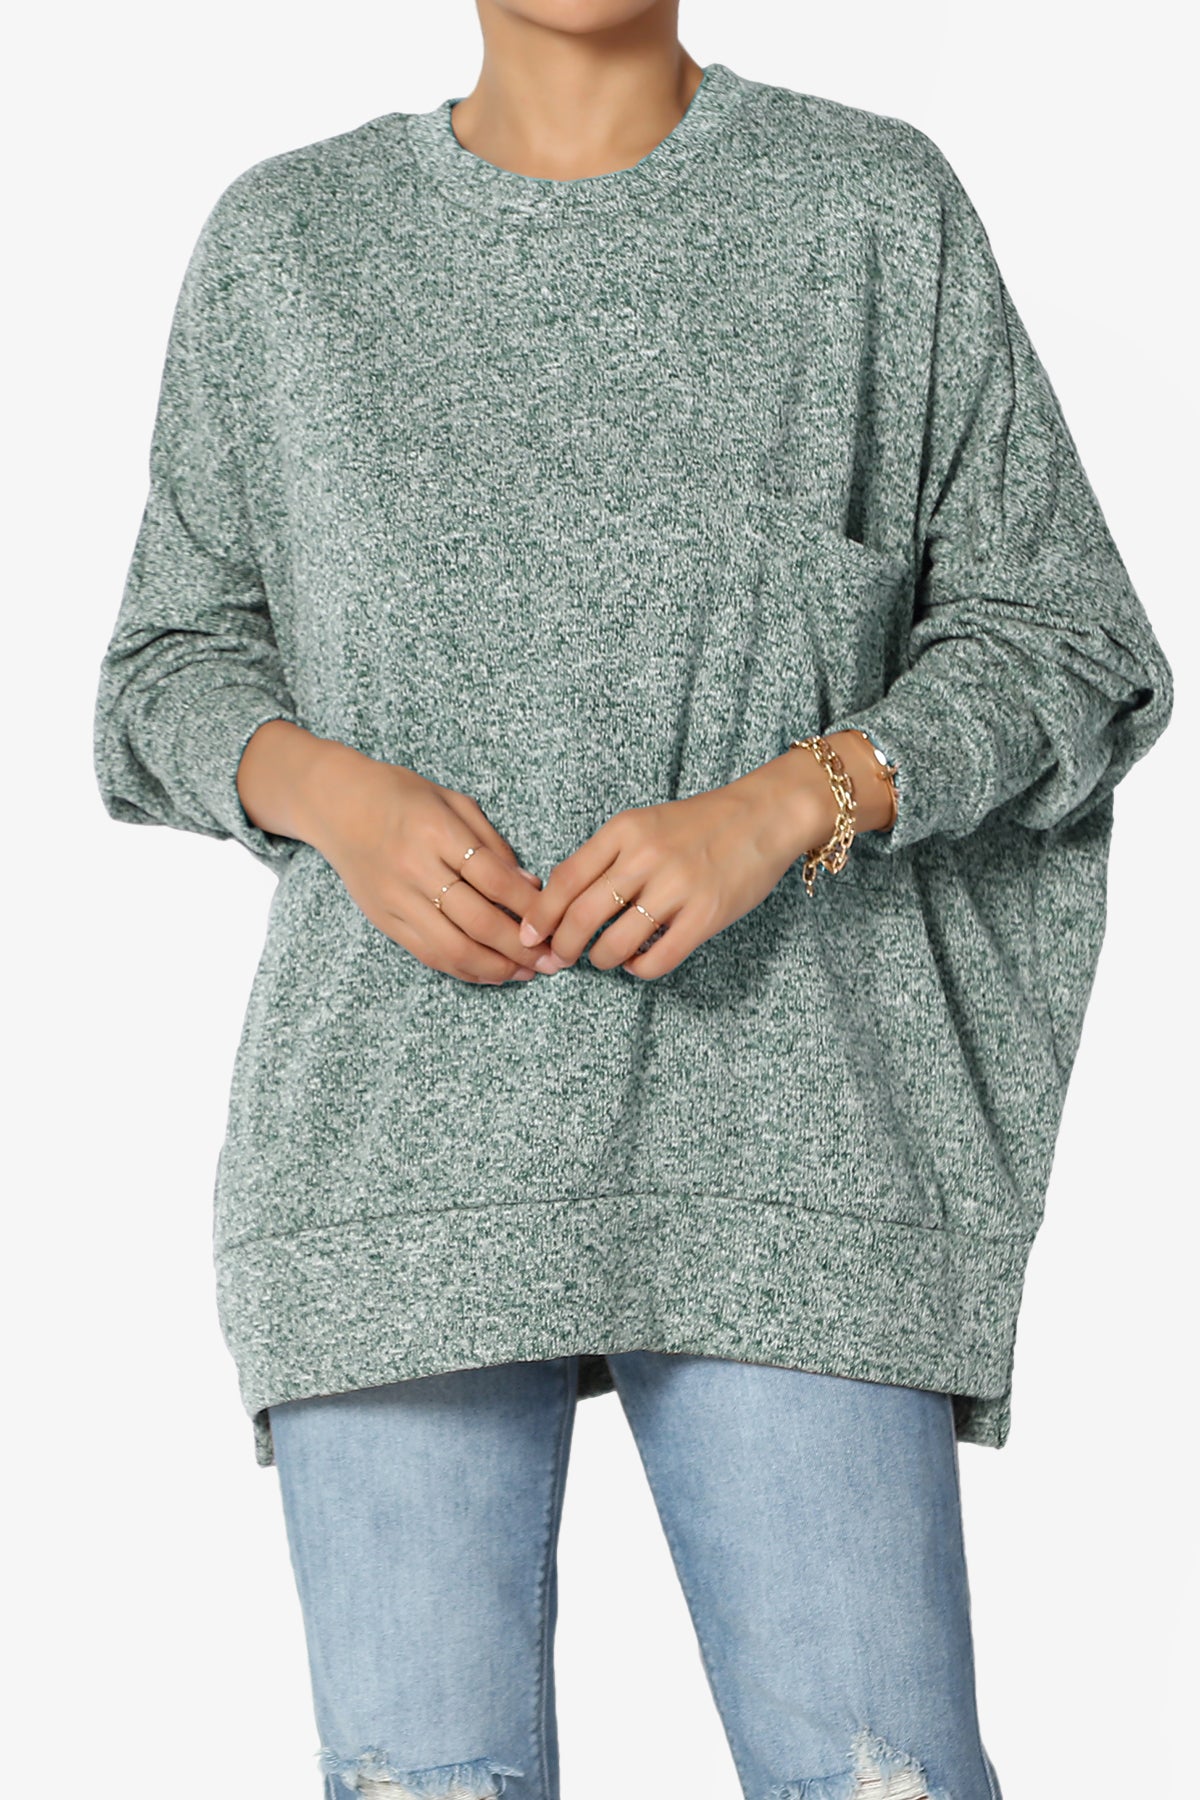 Forge Melange Knit Hi-Low Pocket Sweater PLUS